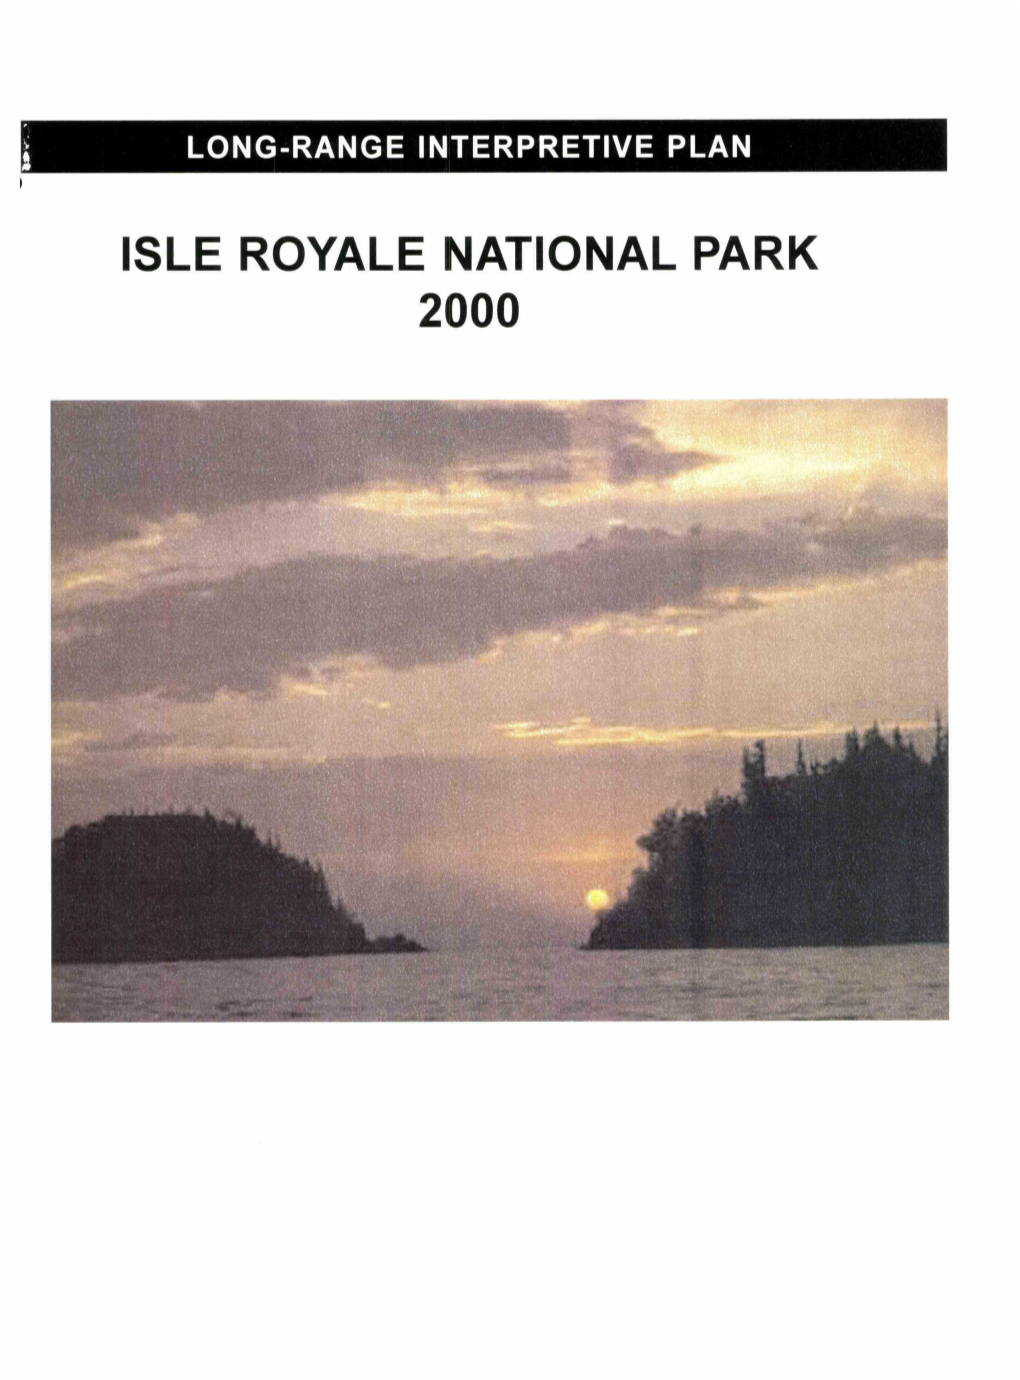 Isle Royale L.Ational Park 2000 Long-Range Interpretive Plan